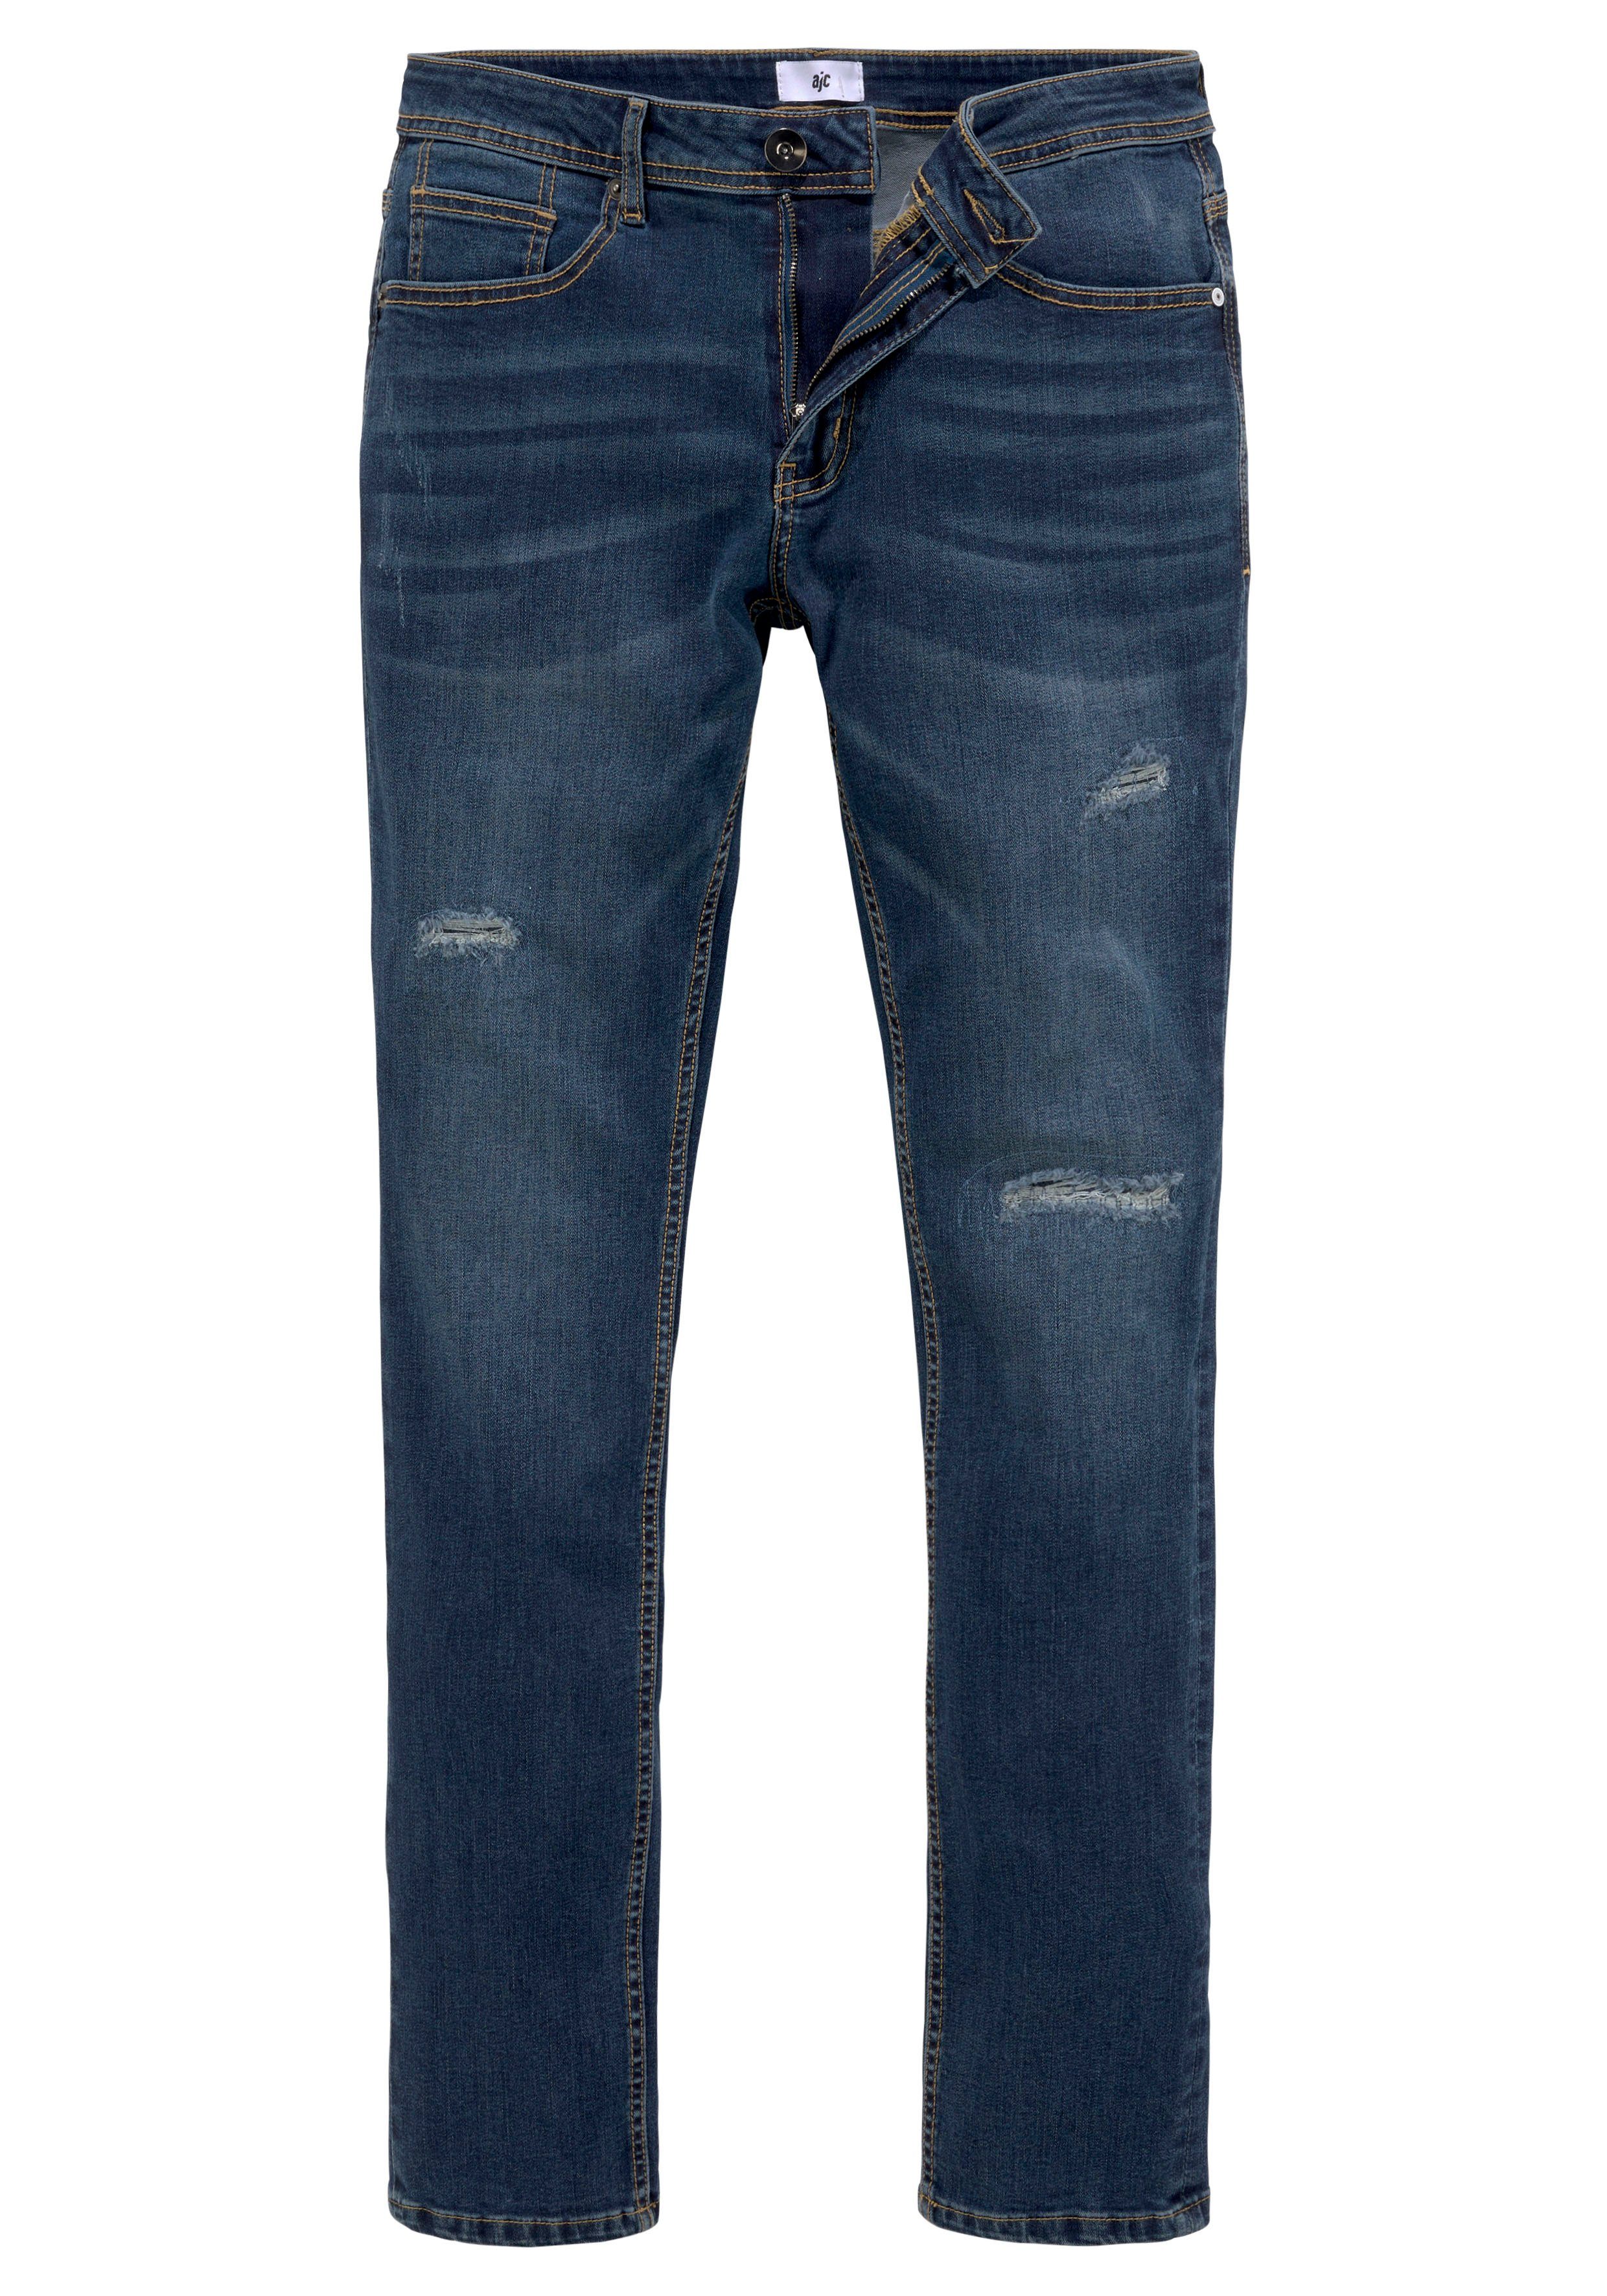 AJC Straight-Jeans mit an dark den Beinen Abriebeffekten blue